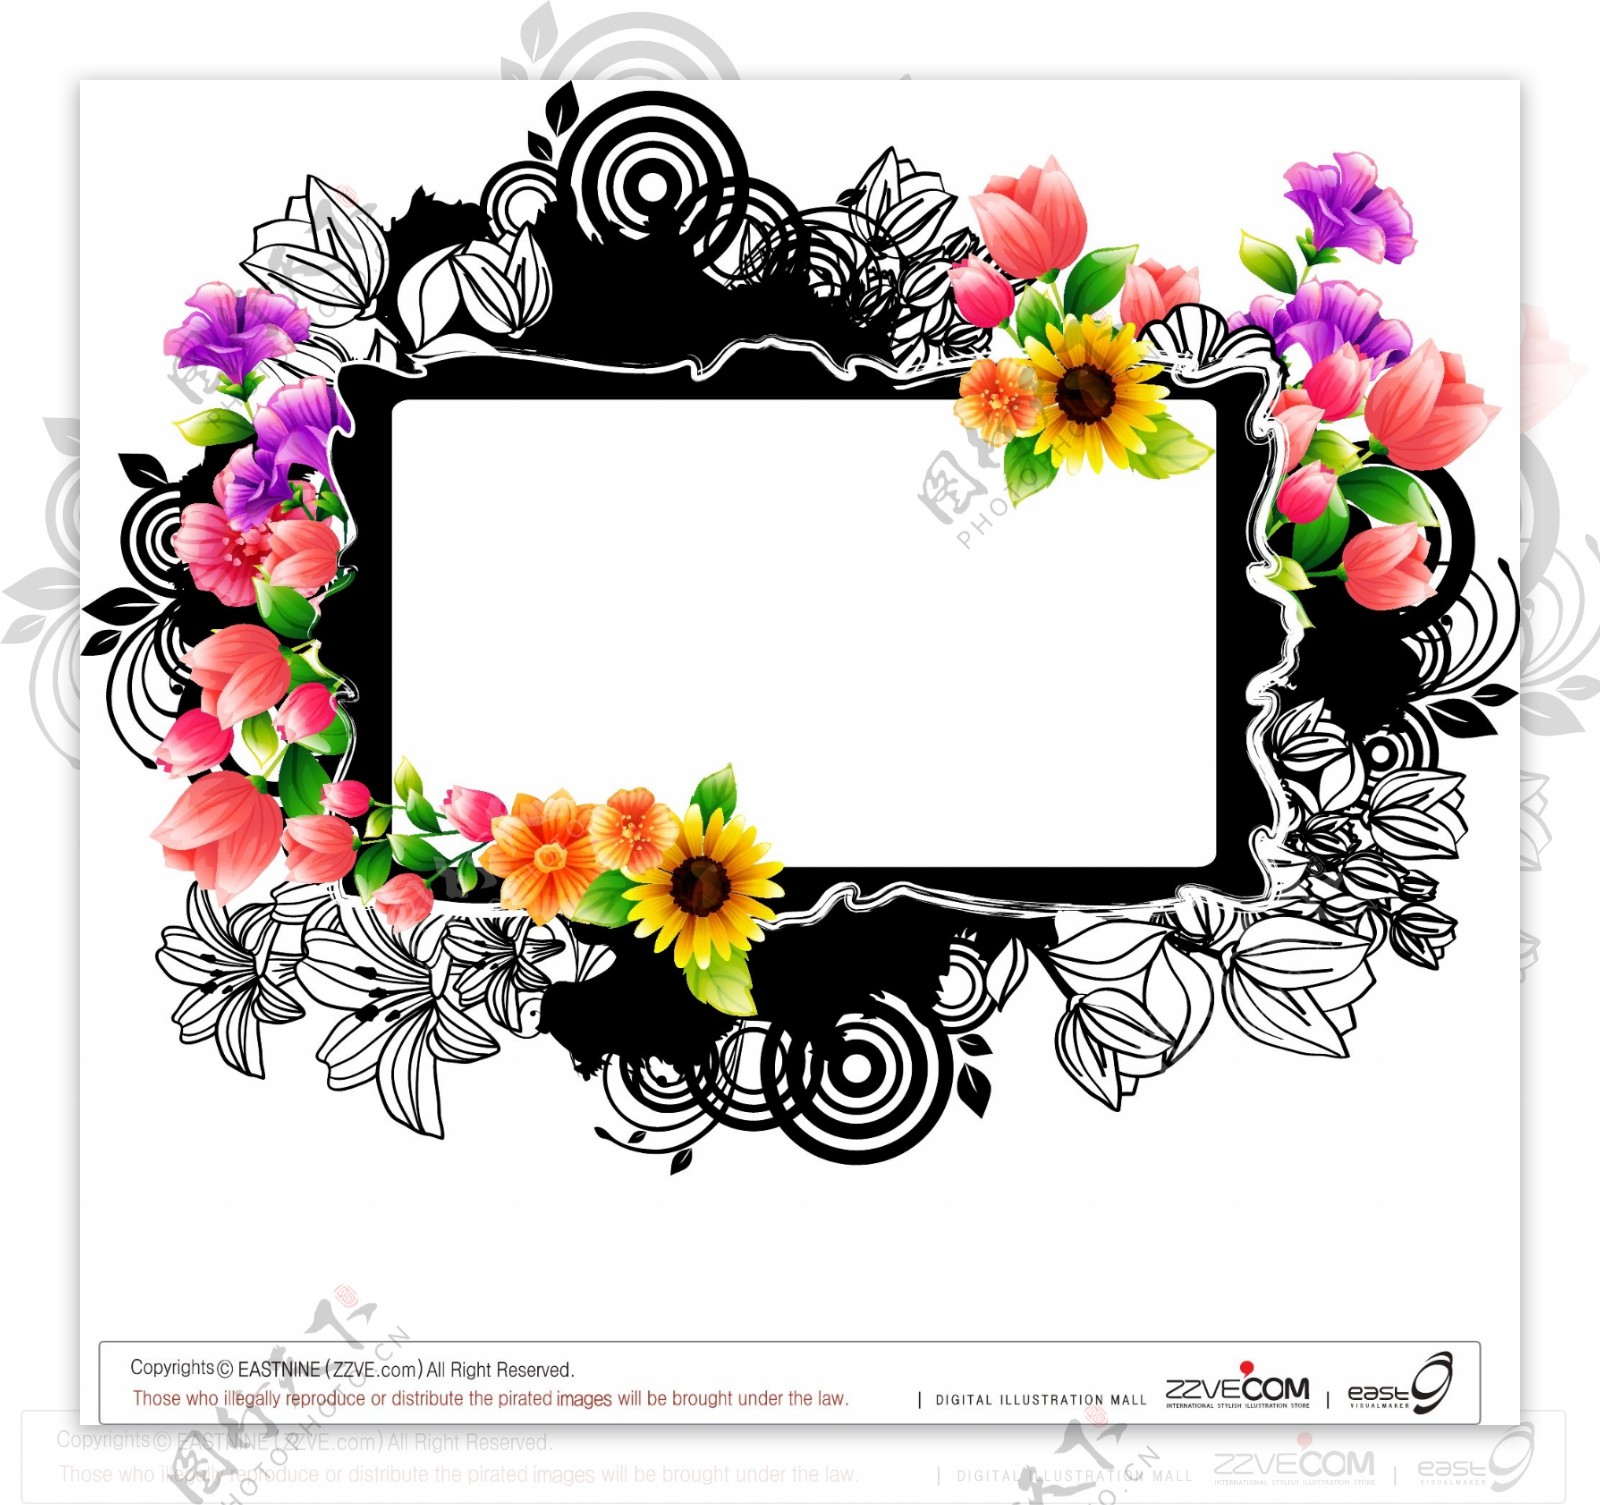 花卉装饰蒙版边框创意设计矢量素材